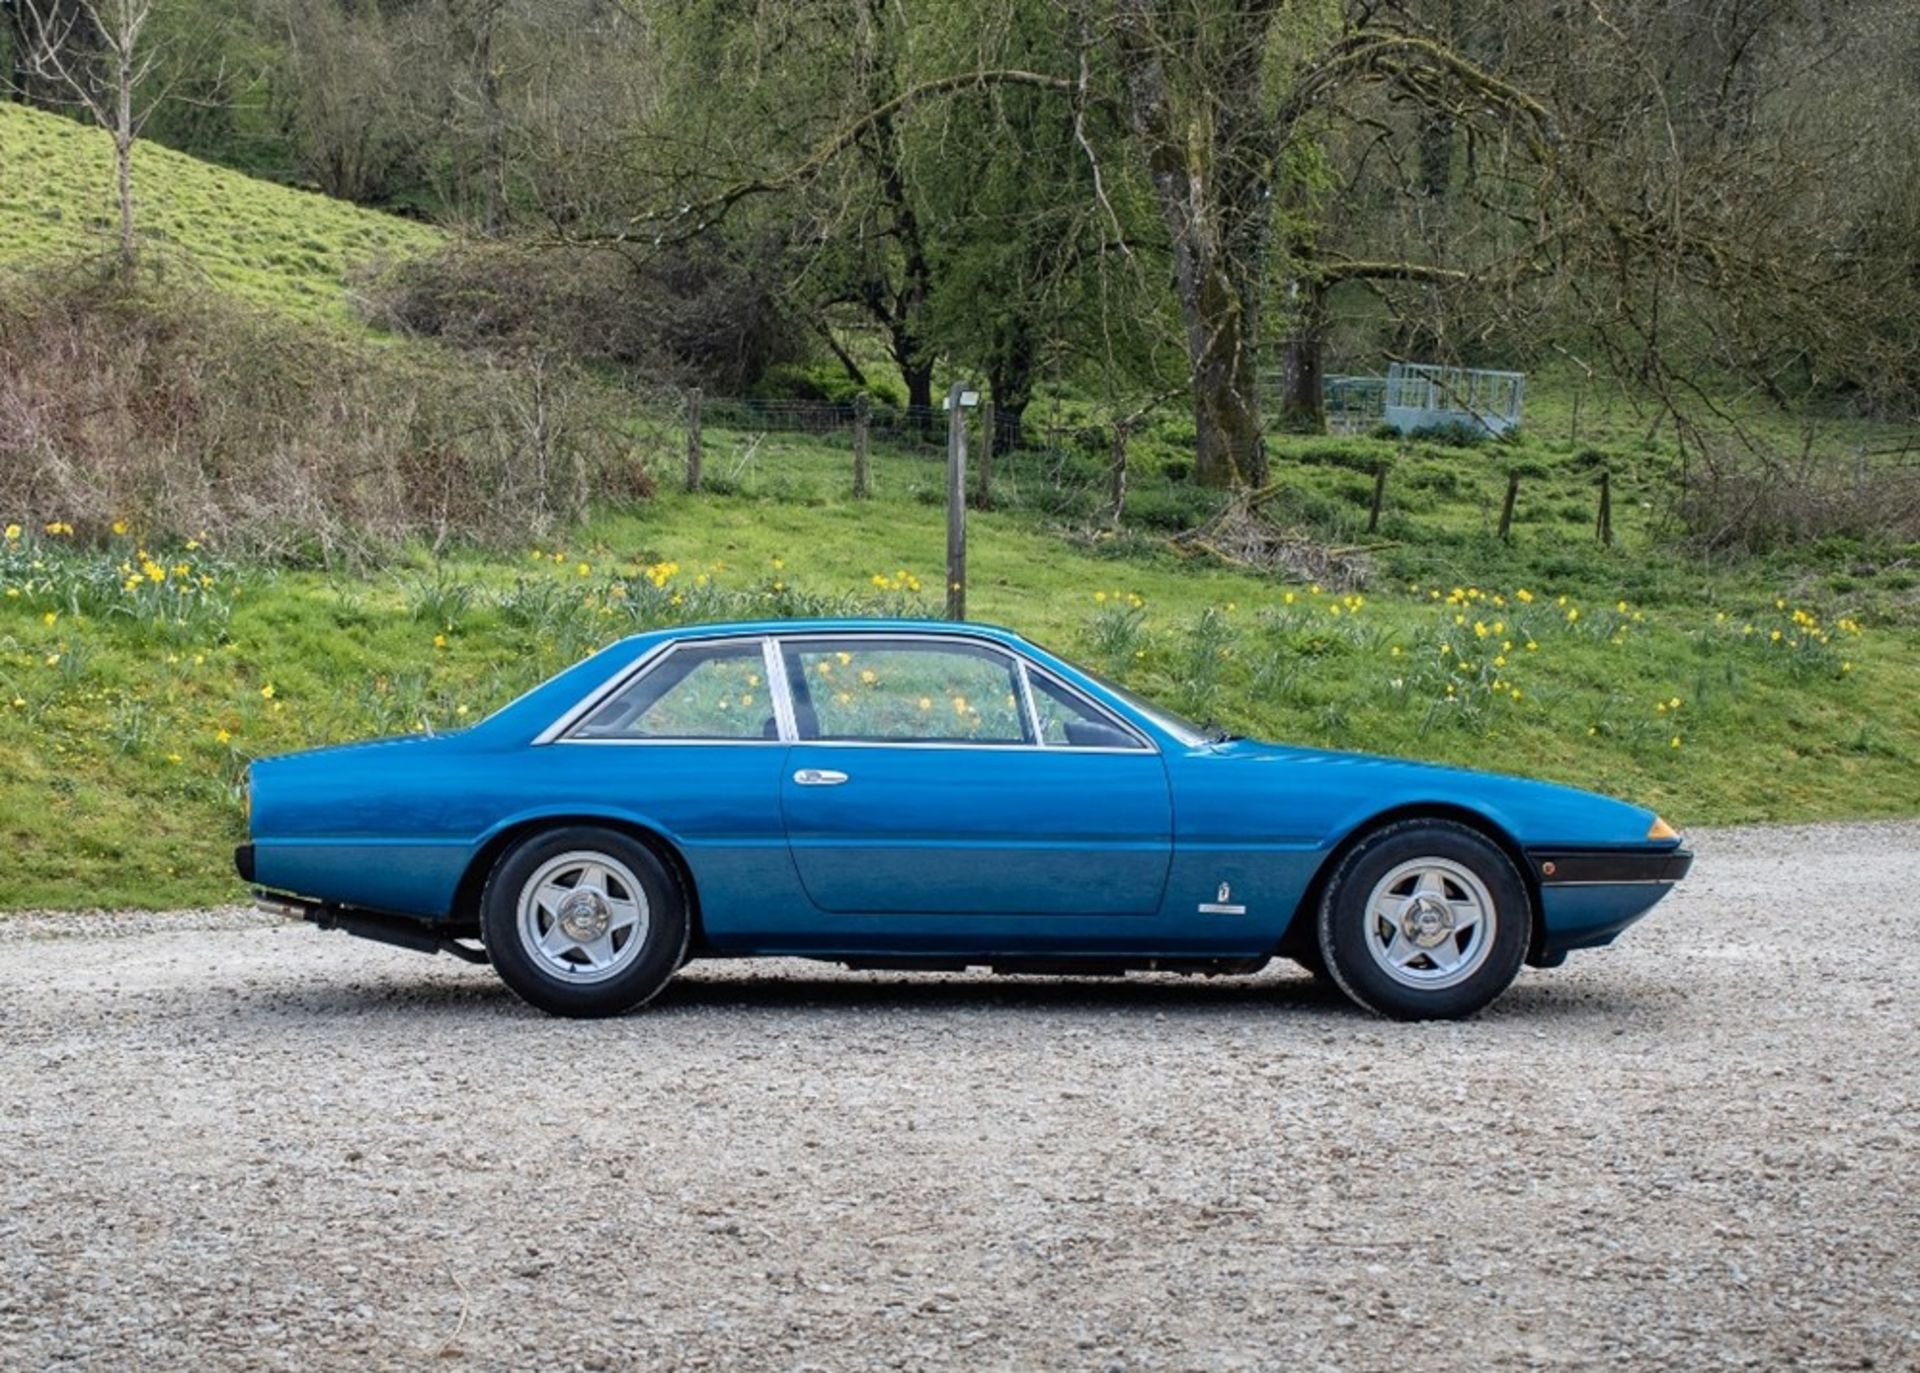 1976 Ferrari 365 GT4 2+2 - Image 3 of 9